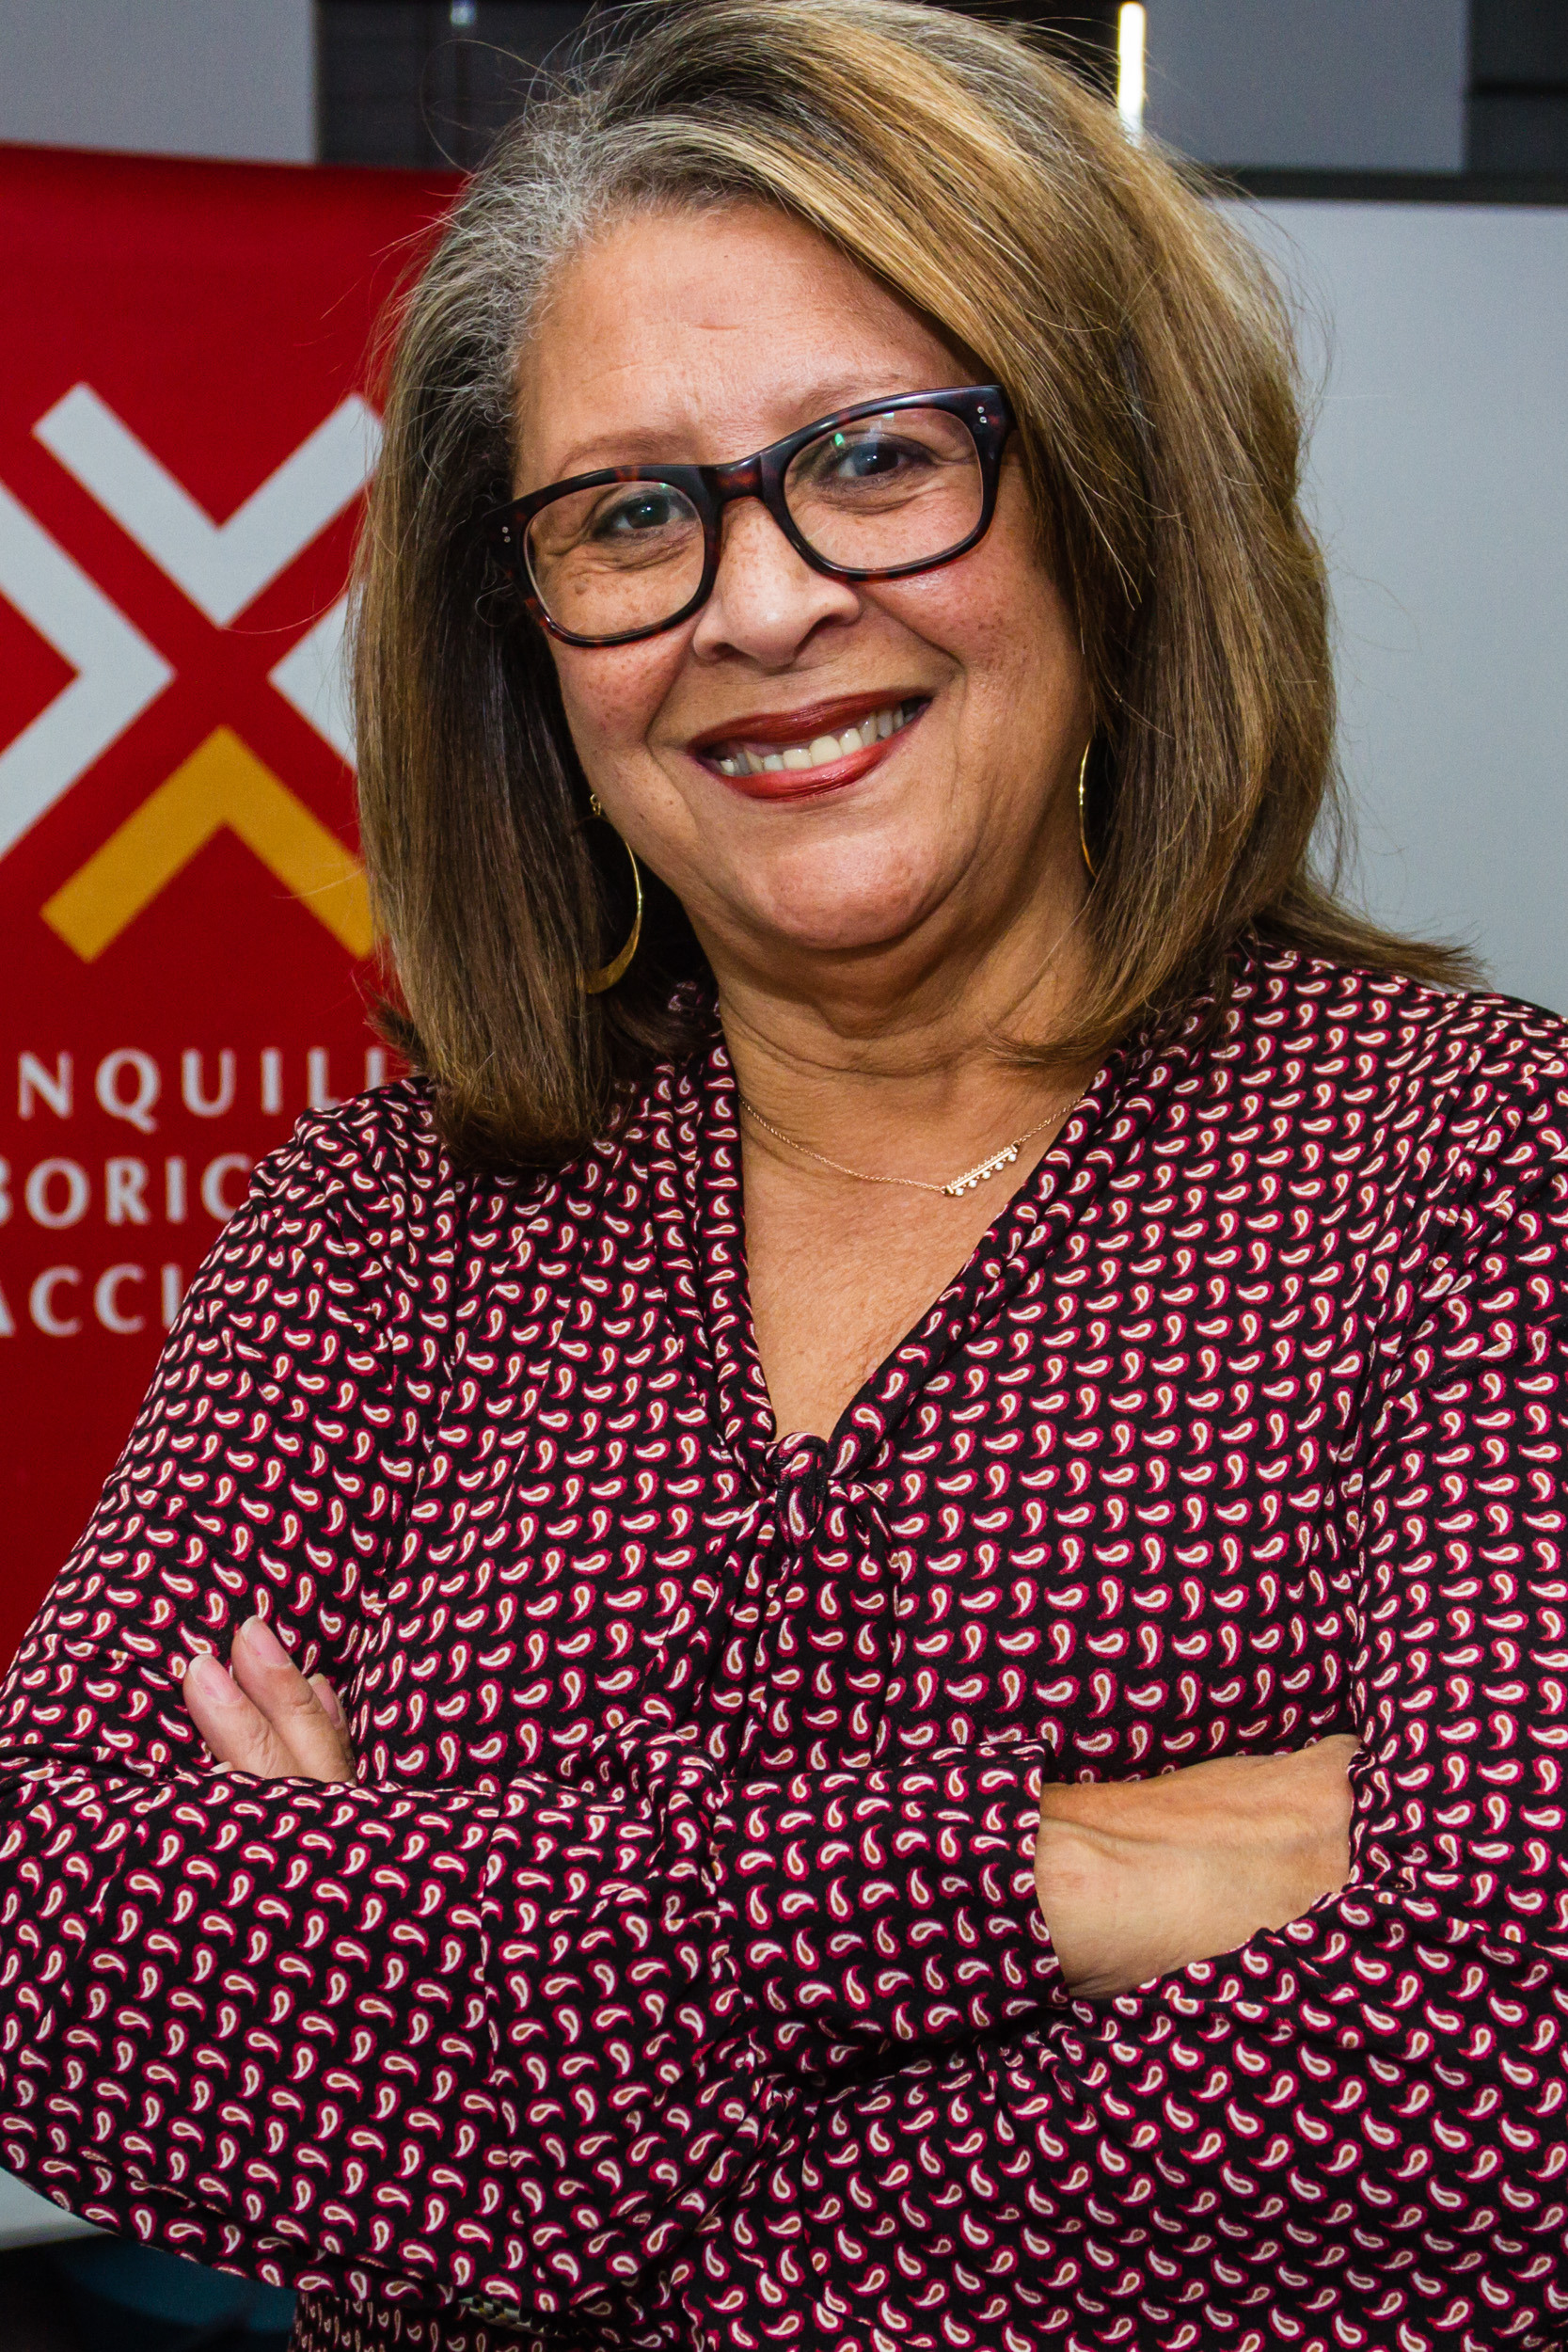 Patricia Duarte